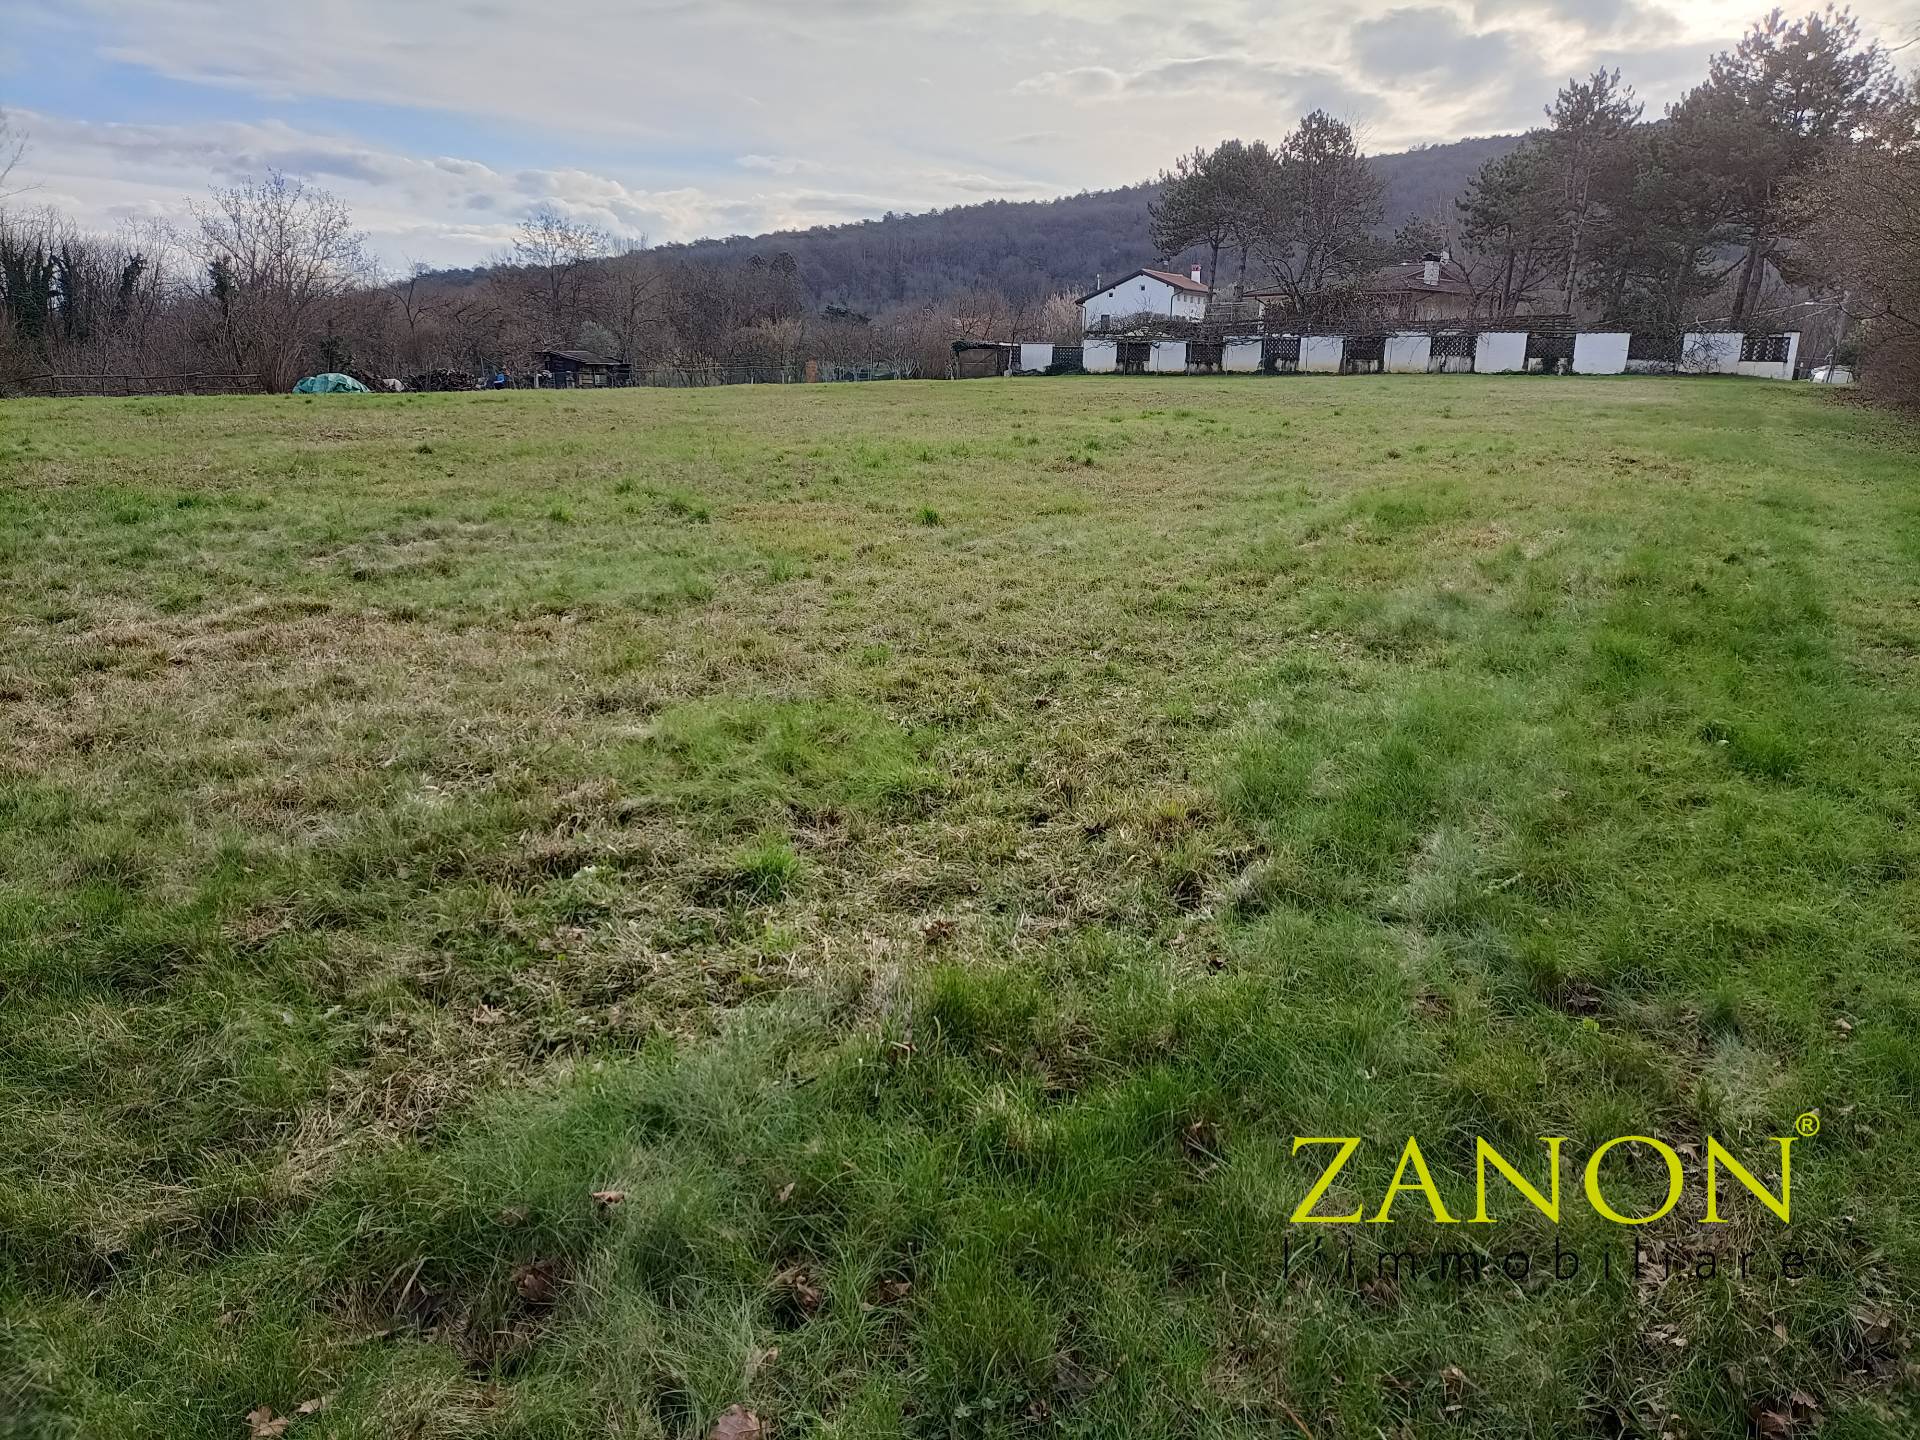 Terreno in vendita, Savogna d'Isonzo gabria